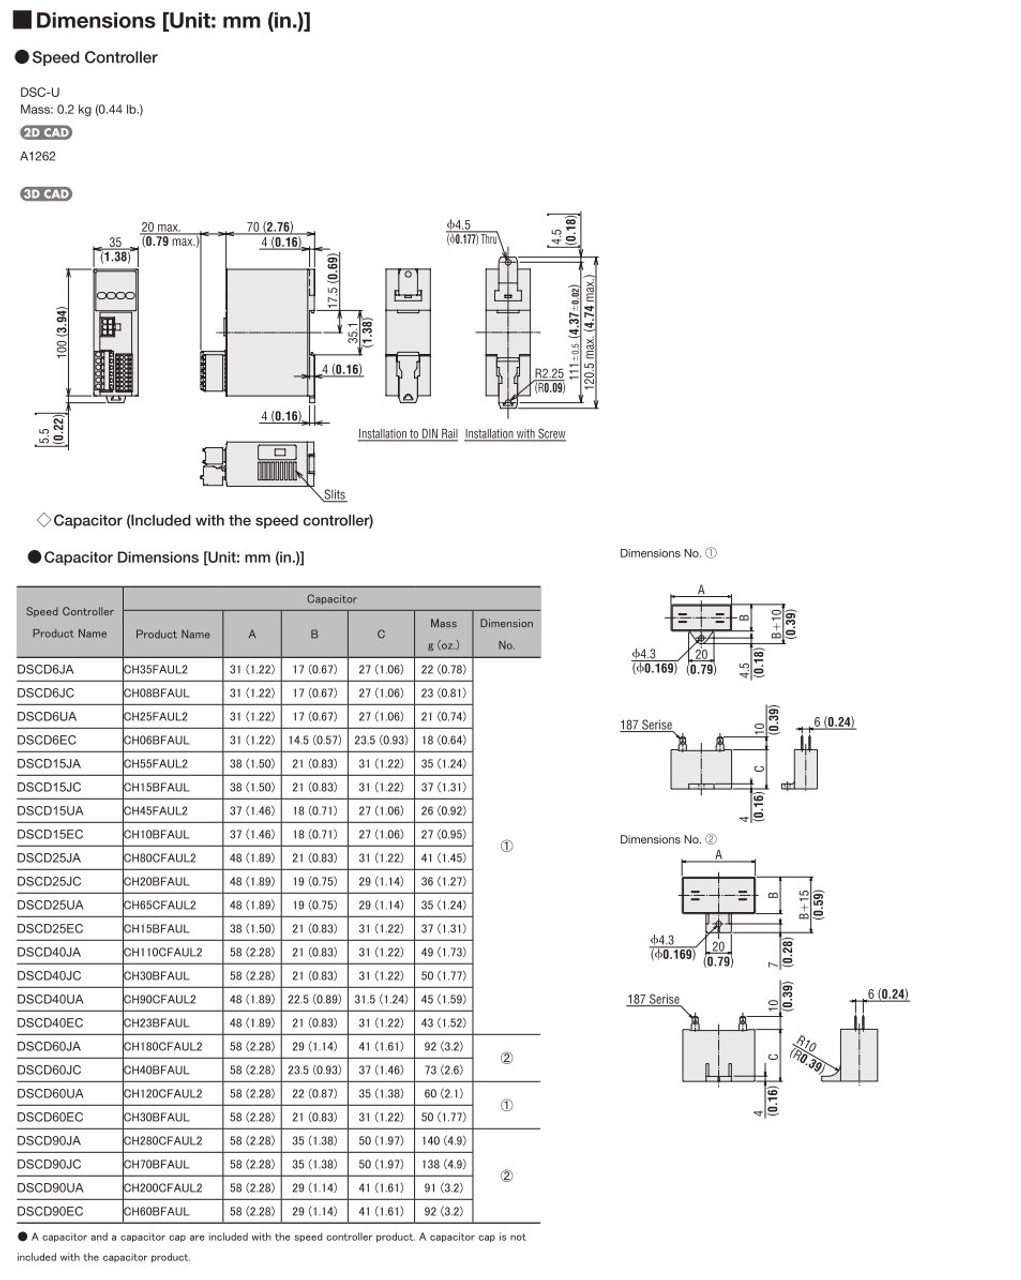 SCM315EC-75 / DSCD15EC - Dimensions